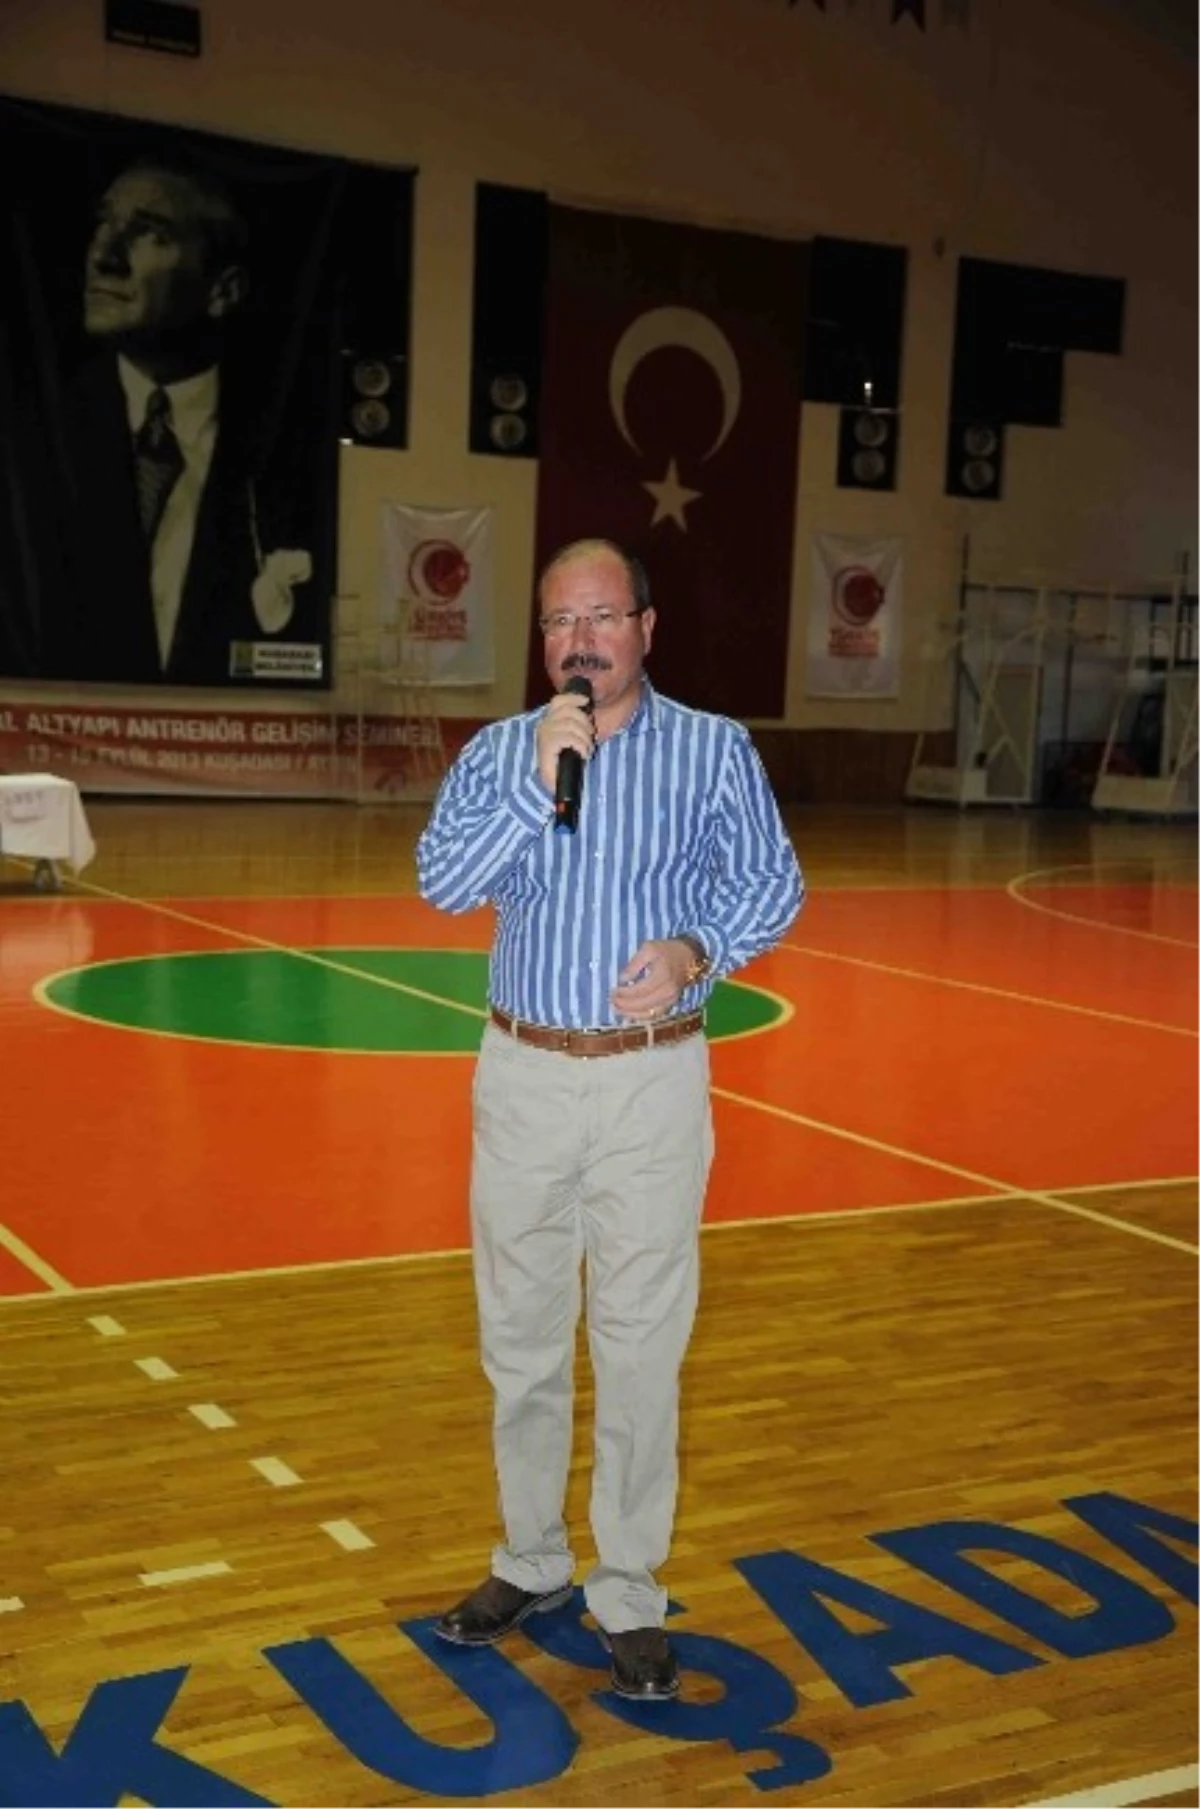 Basketbol Altyapı Antrönerleri Gelişim Semineri Kuşadası\'nda Yapıldı